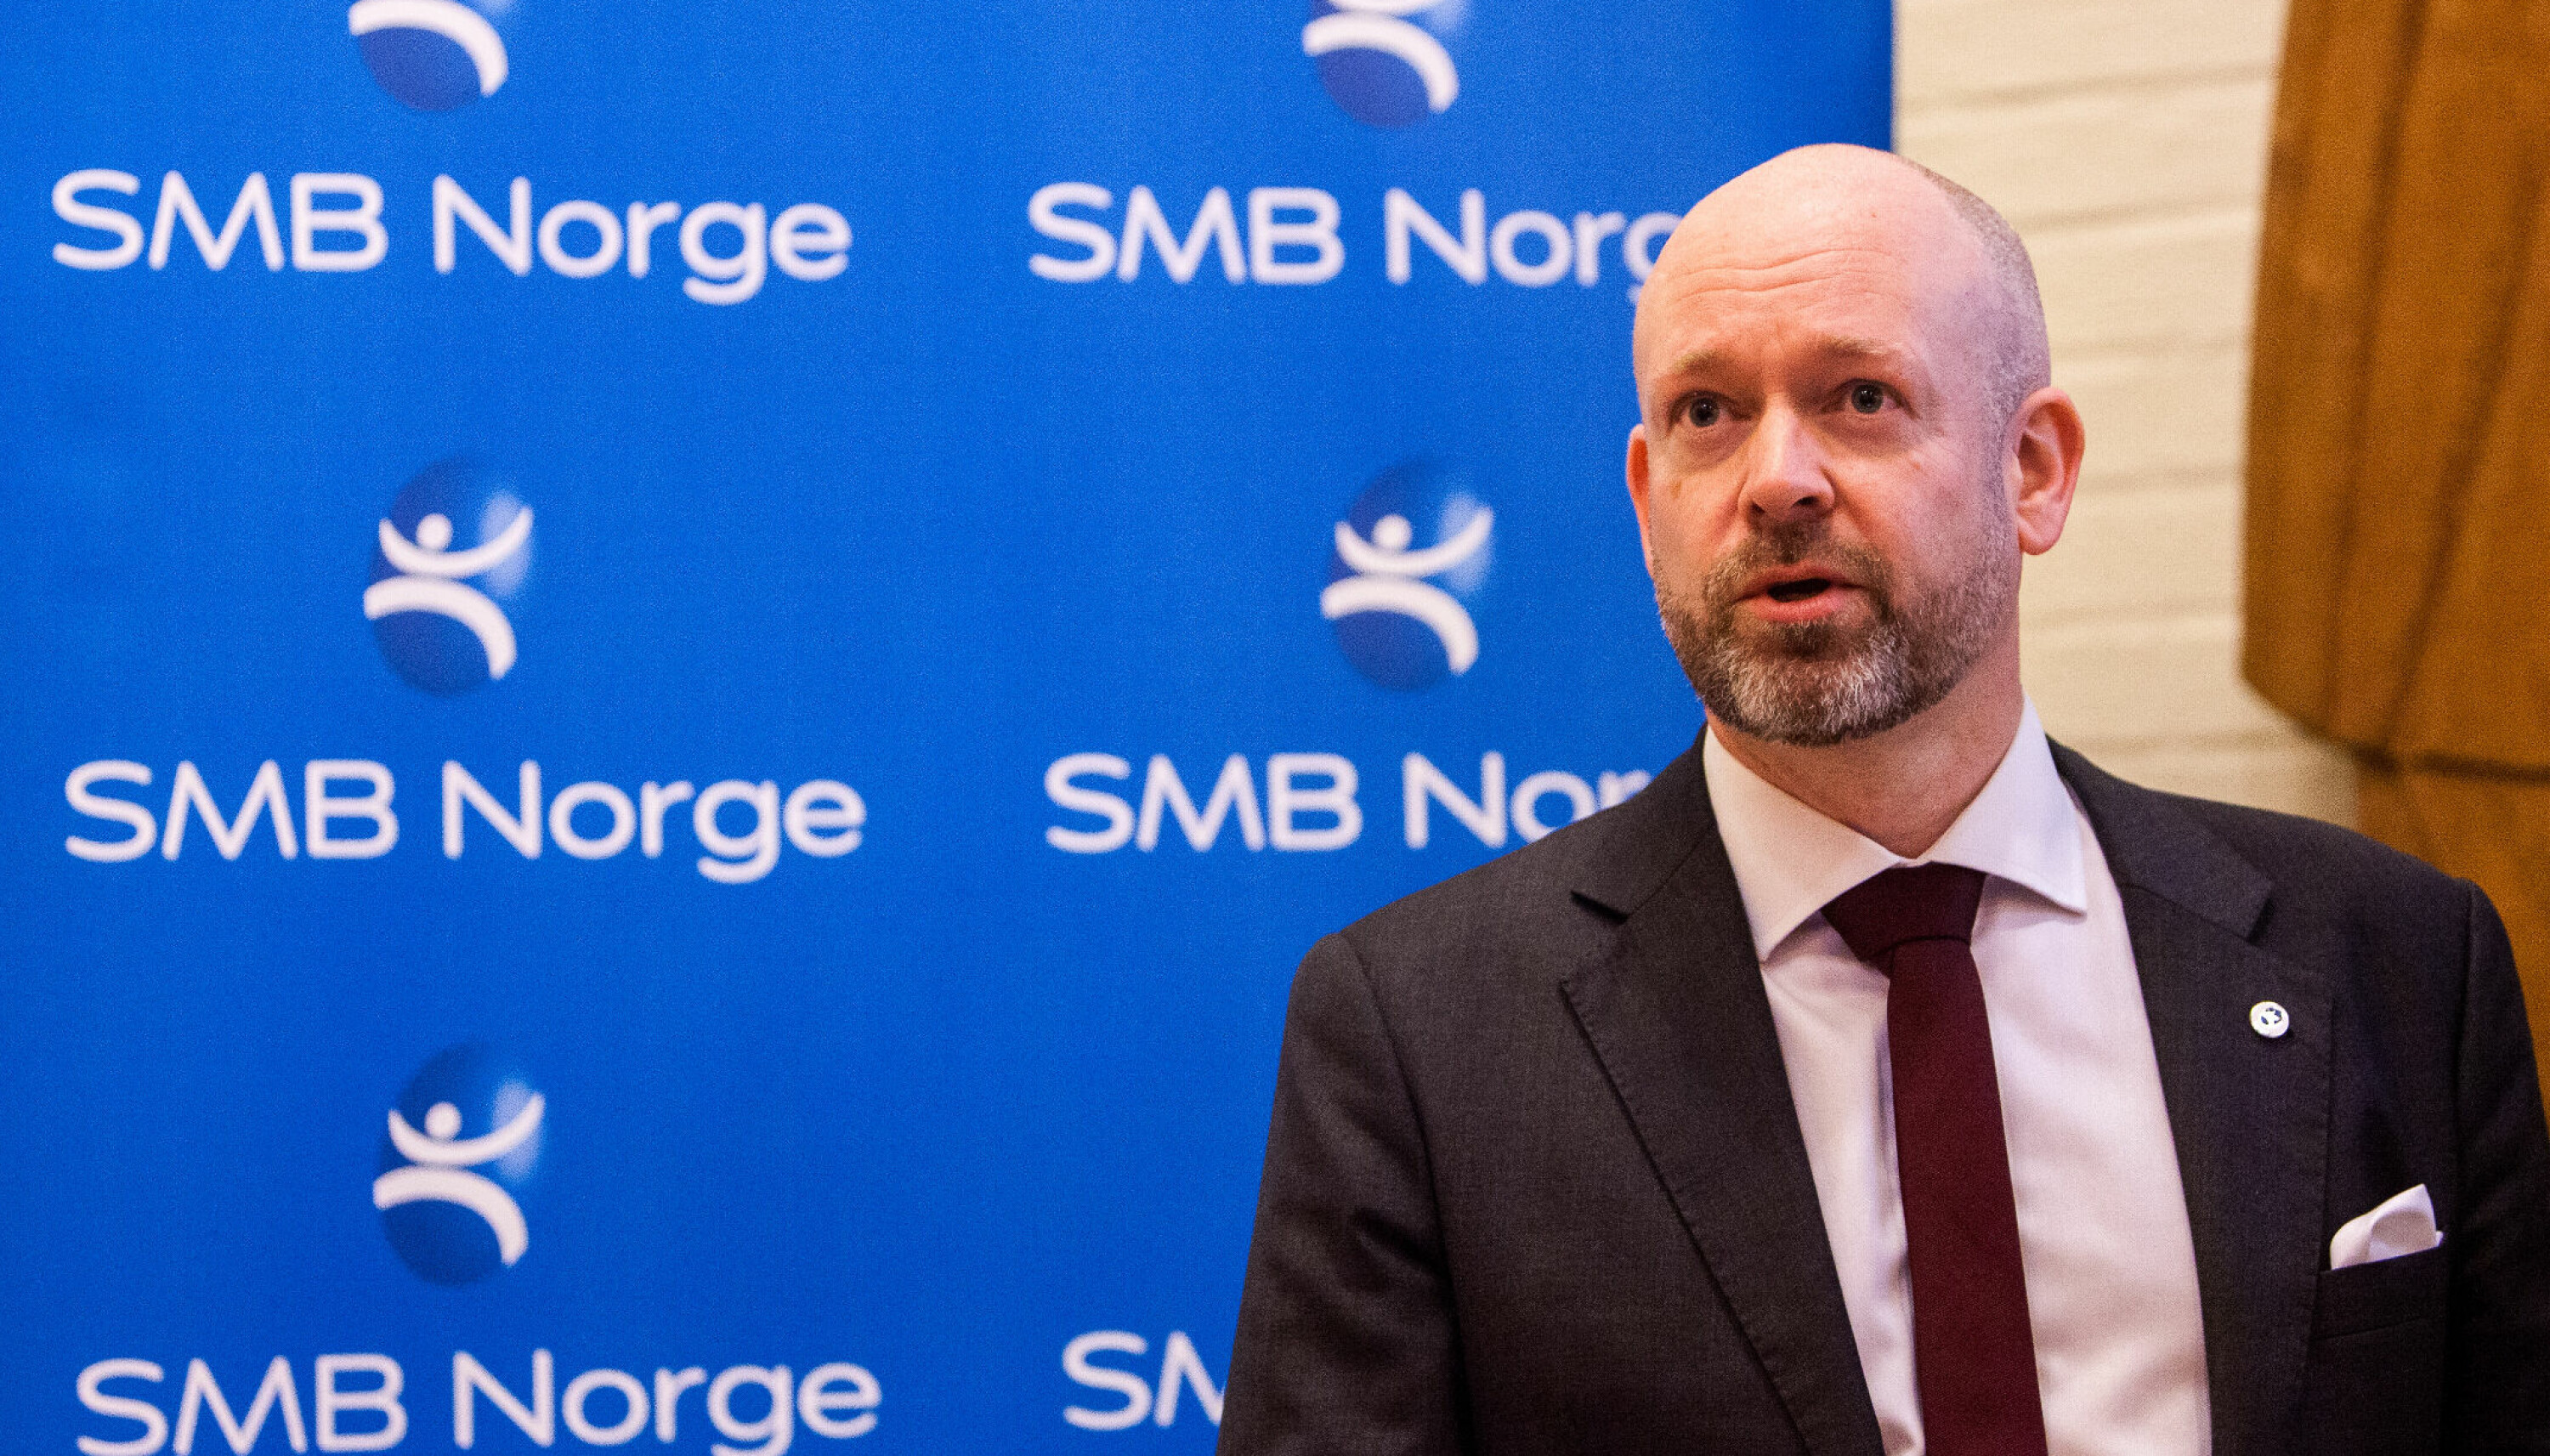 SKUFFET: - Jeg er svært skuffet over at regjeringen fortsetter å svikte landets små og mellomstore bedrifter, sier Jørund H. Rytman, administrerende direktør i SMB Norge